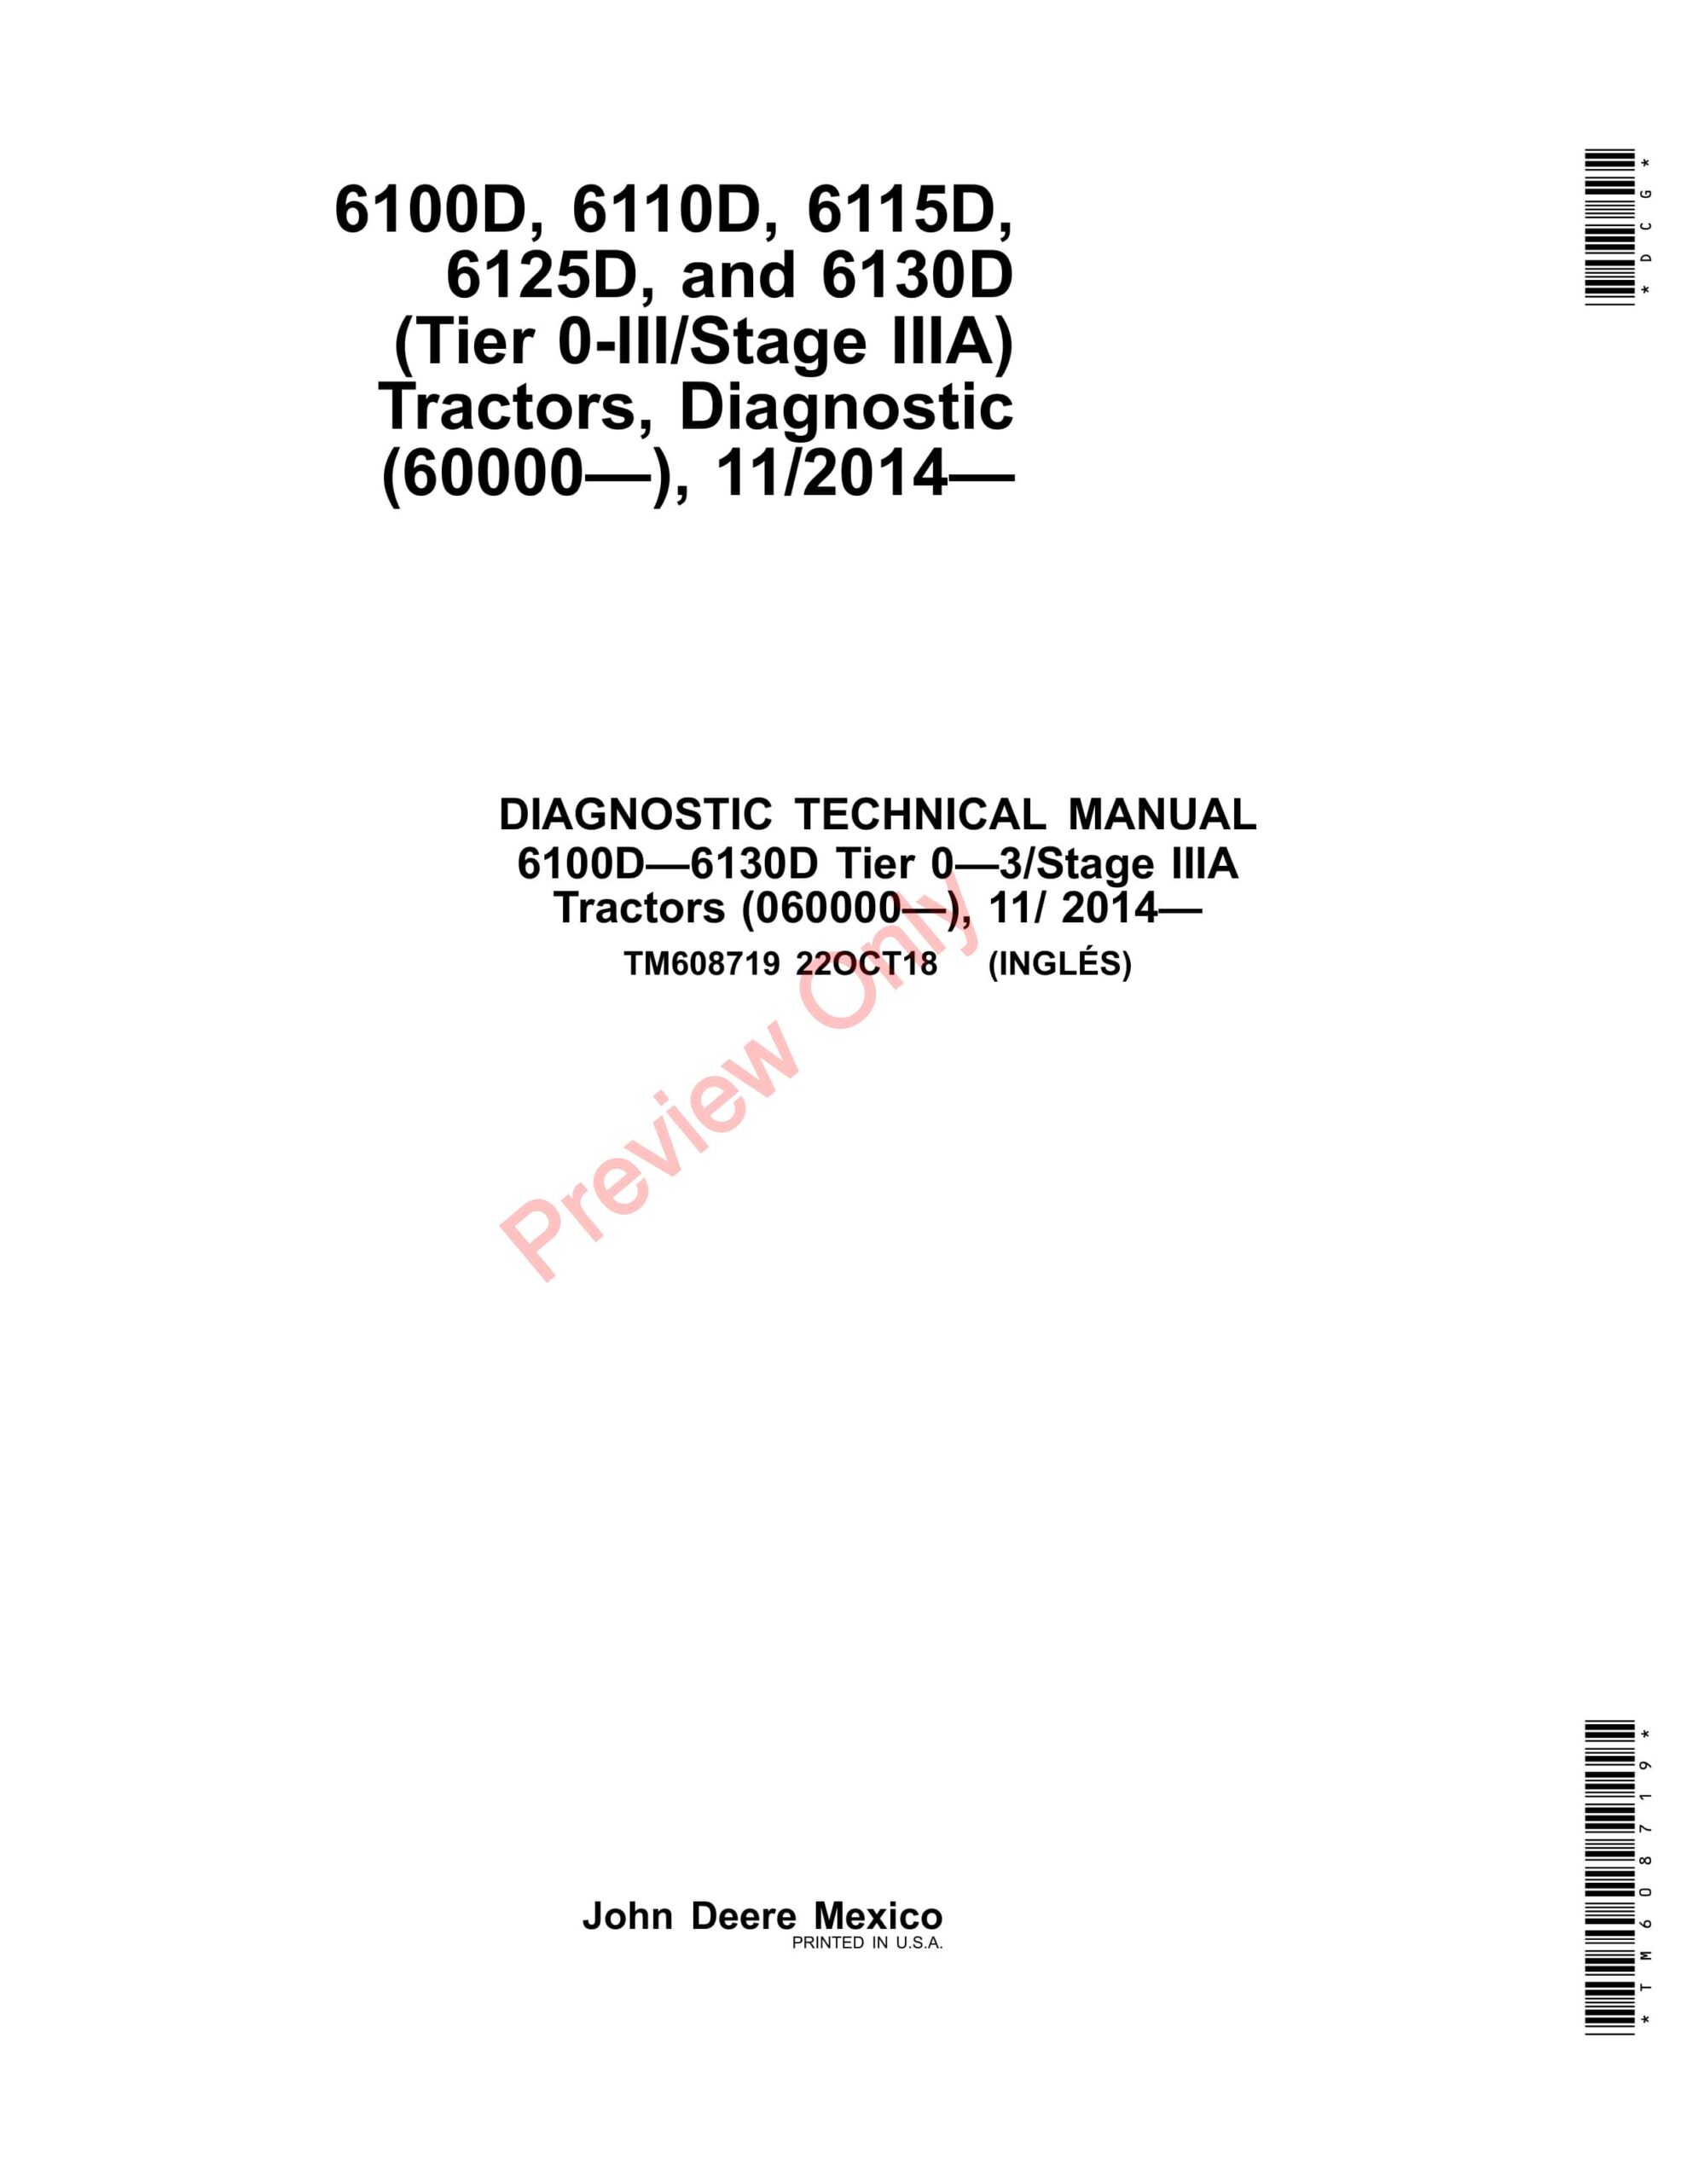 John Deere 6100D, 6110D, 6115D, 6125D and 6130D Tractors (112014 Diagnostic Technical Manual TM608719 22OCT18-1